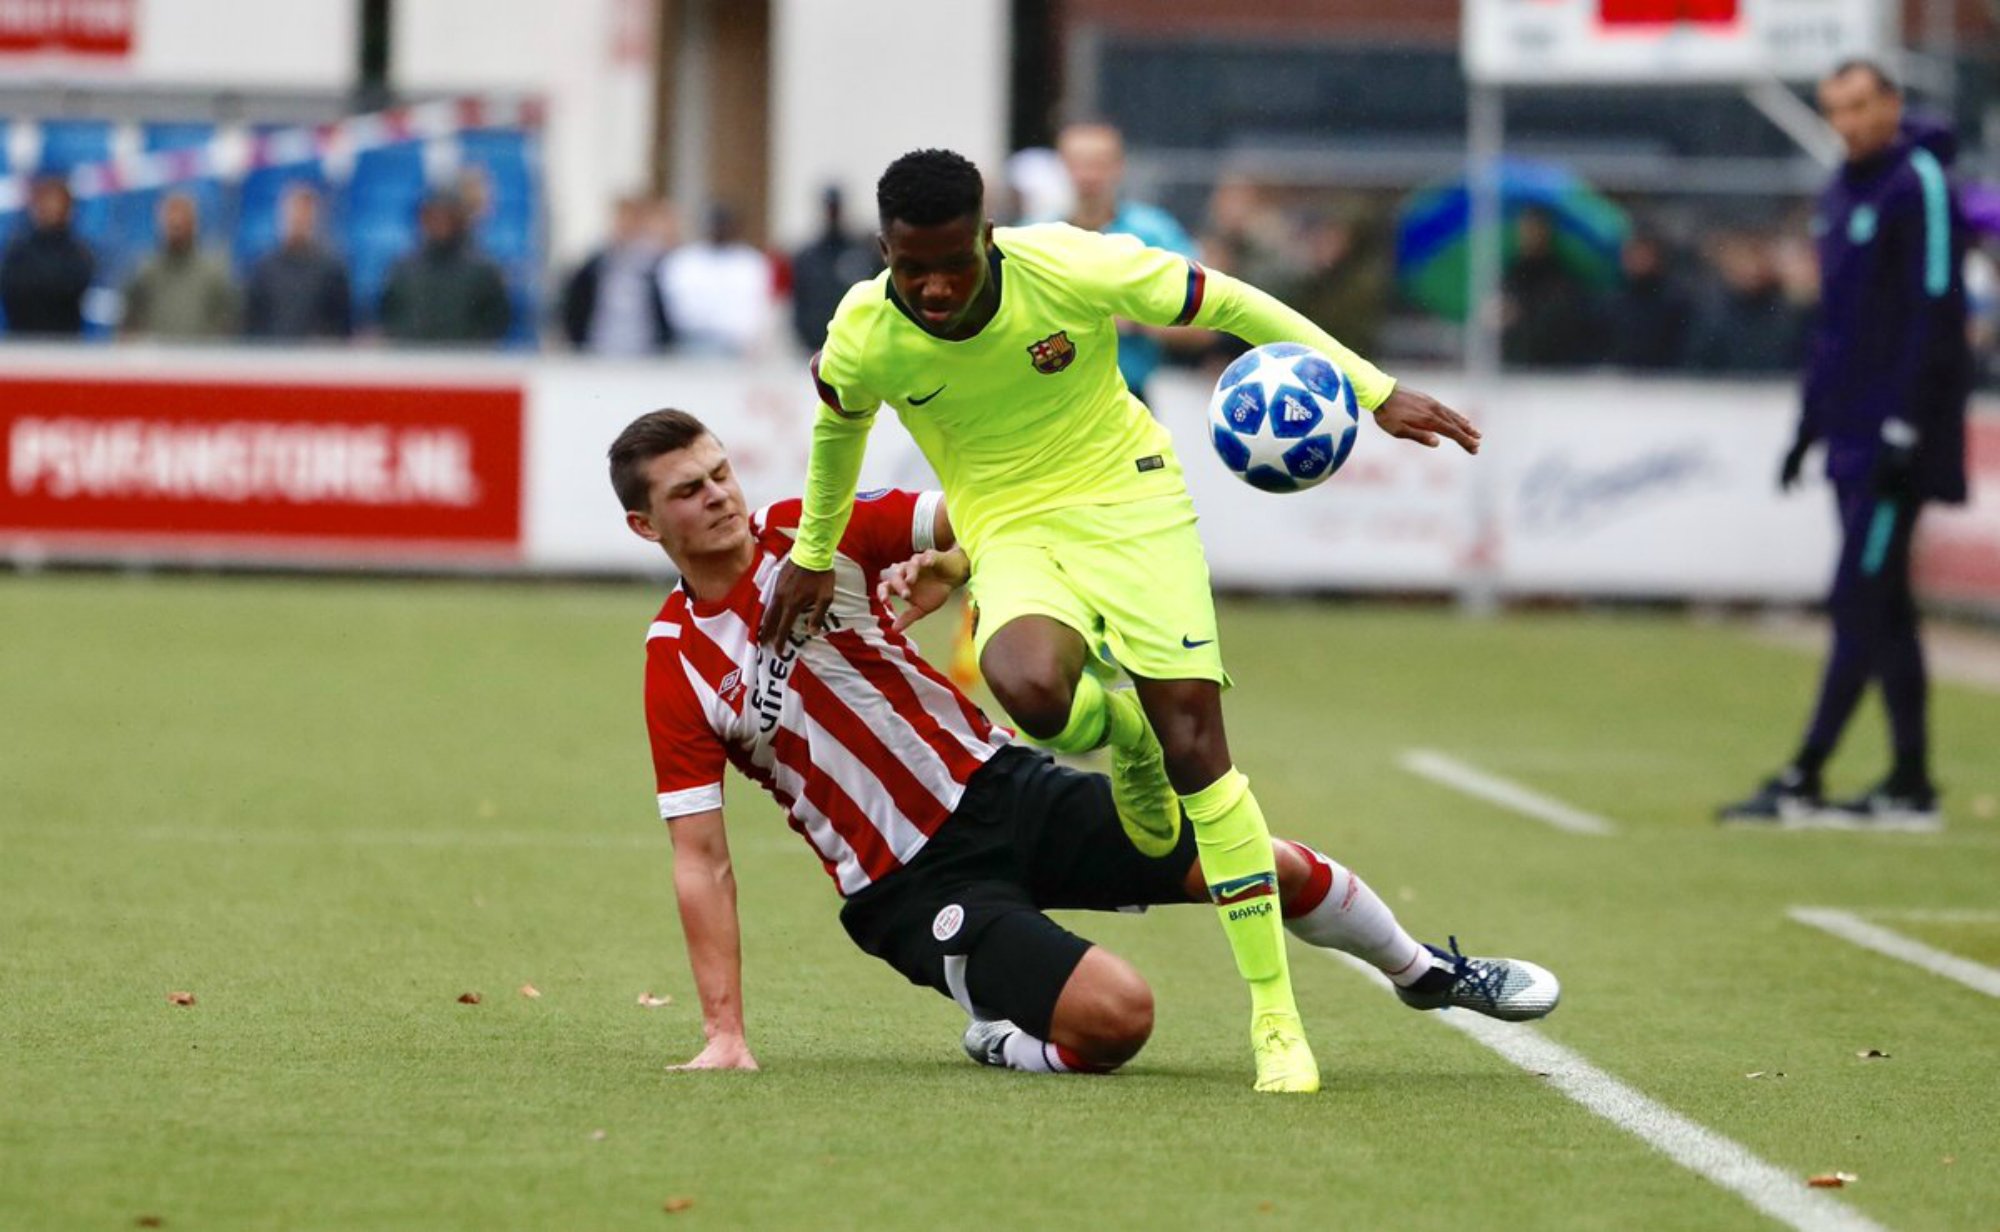 El Barça juvenil empata en Eindhoven y estará en los octavos de la Youth League (1-1)